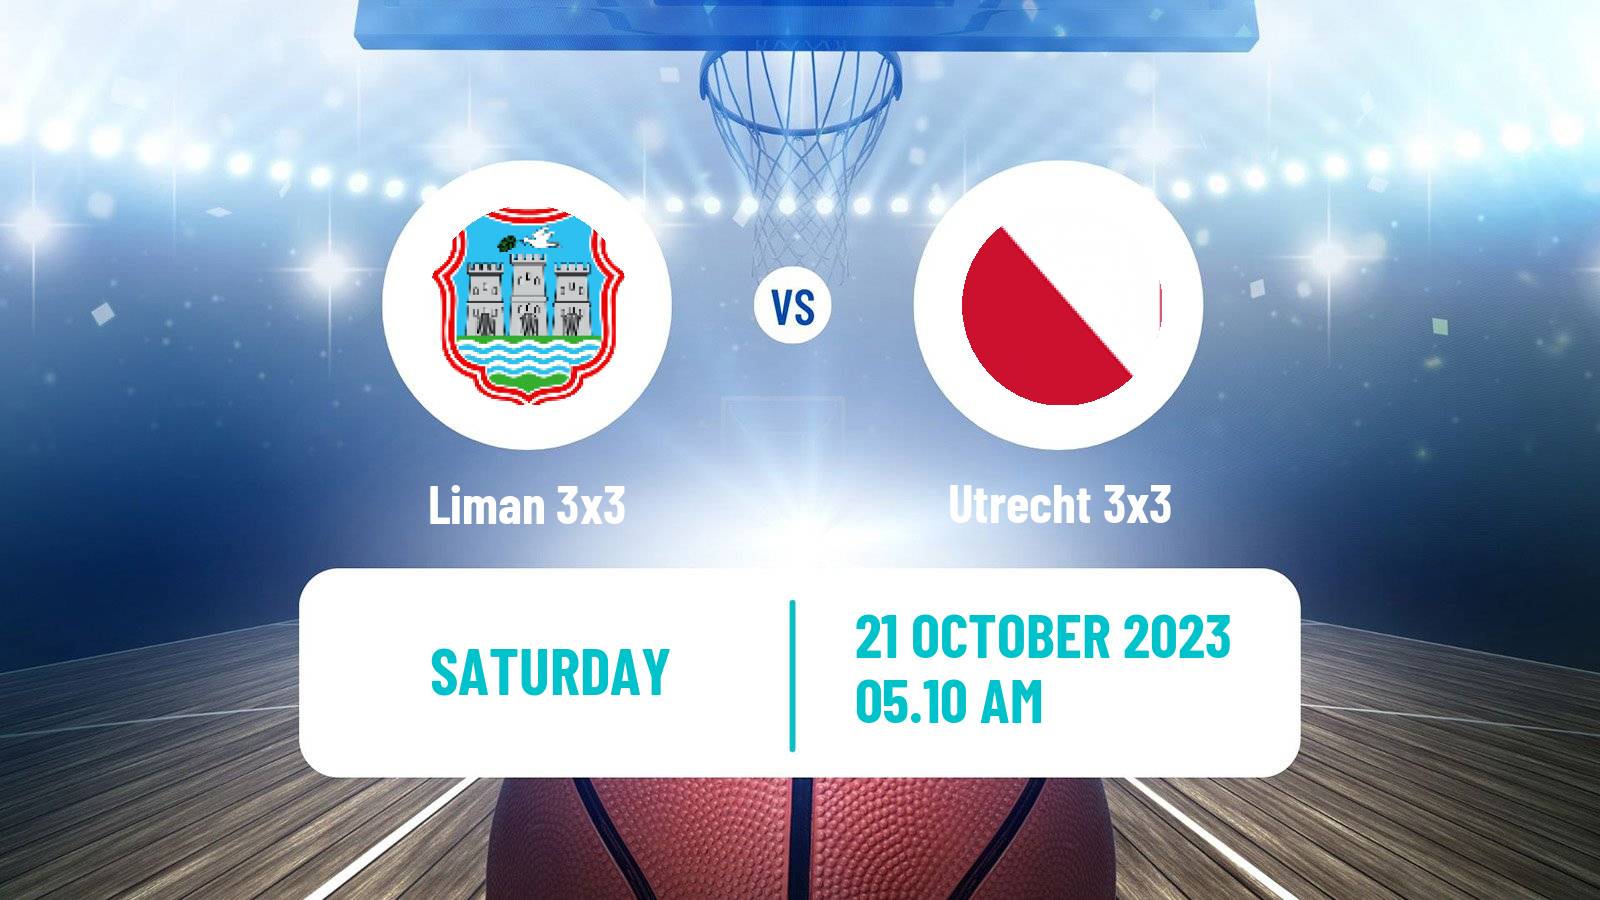 Basketball World Tour Chengdu 3x3 Liman 3x3 - Utrecht 3x3